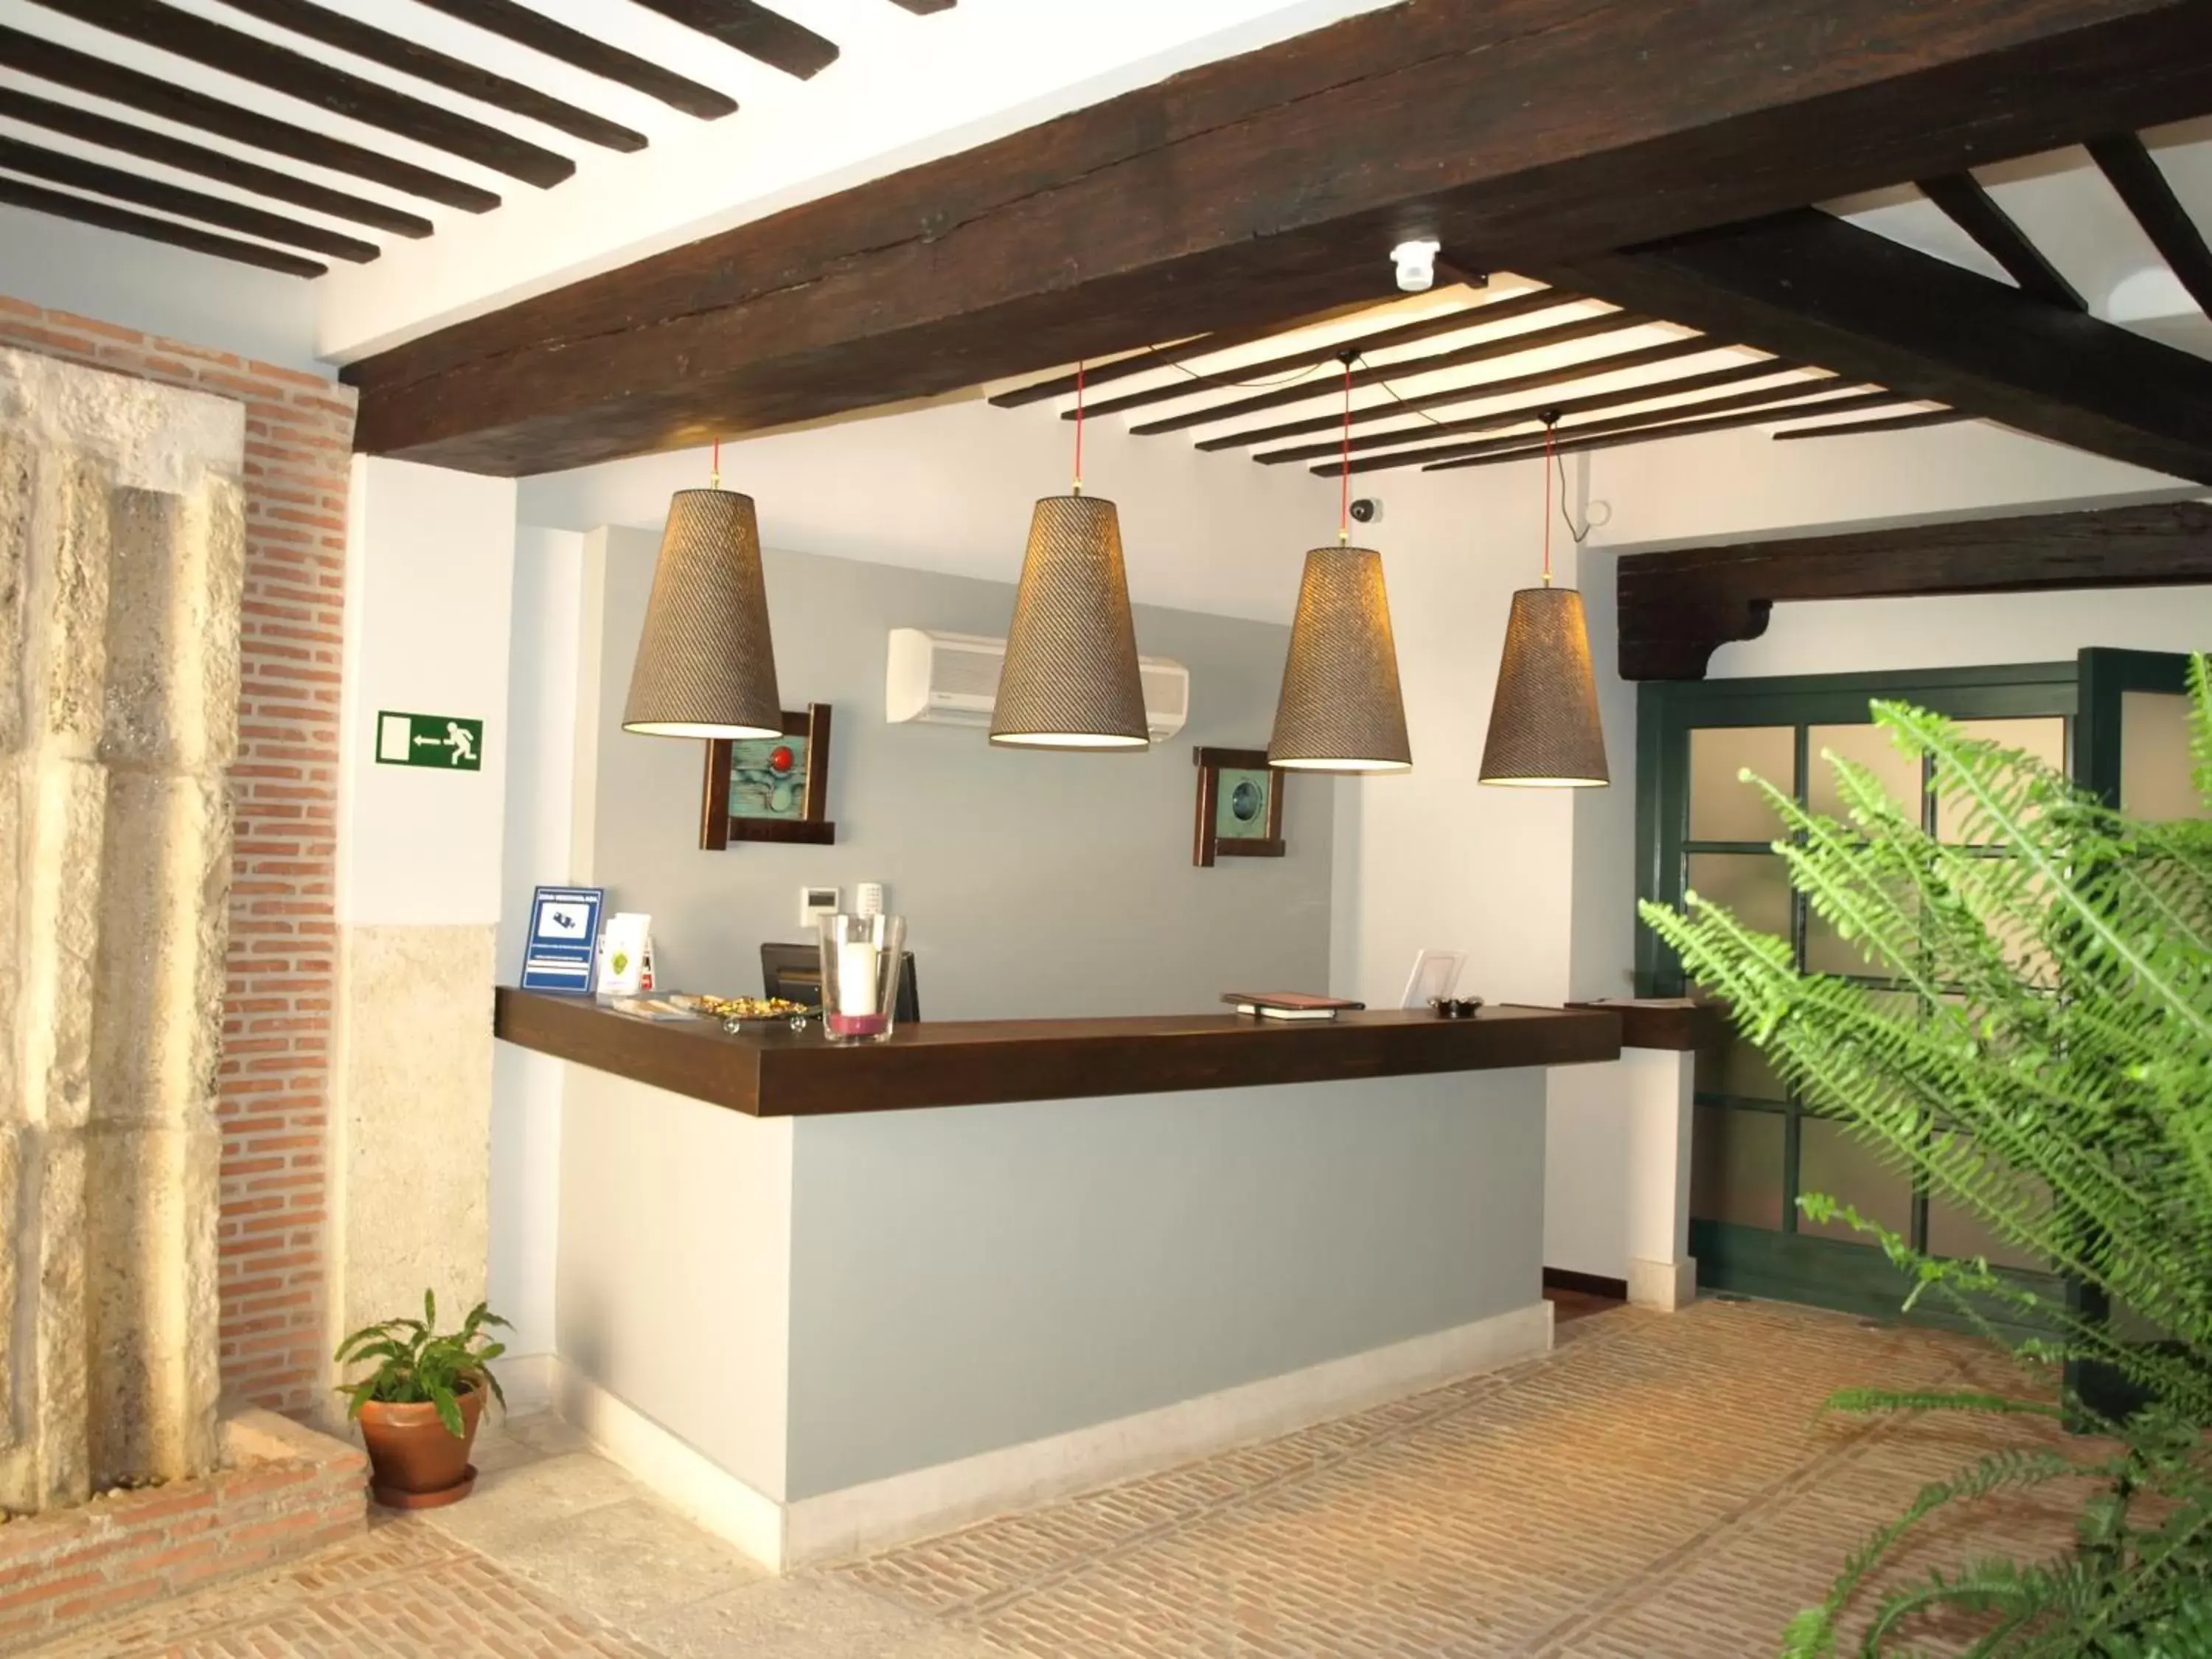 Lobby or reception in Hotel Spa La Casa Del Convento